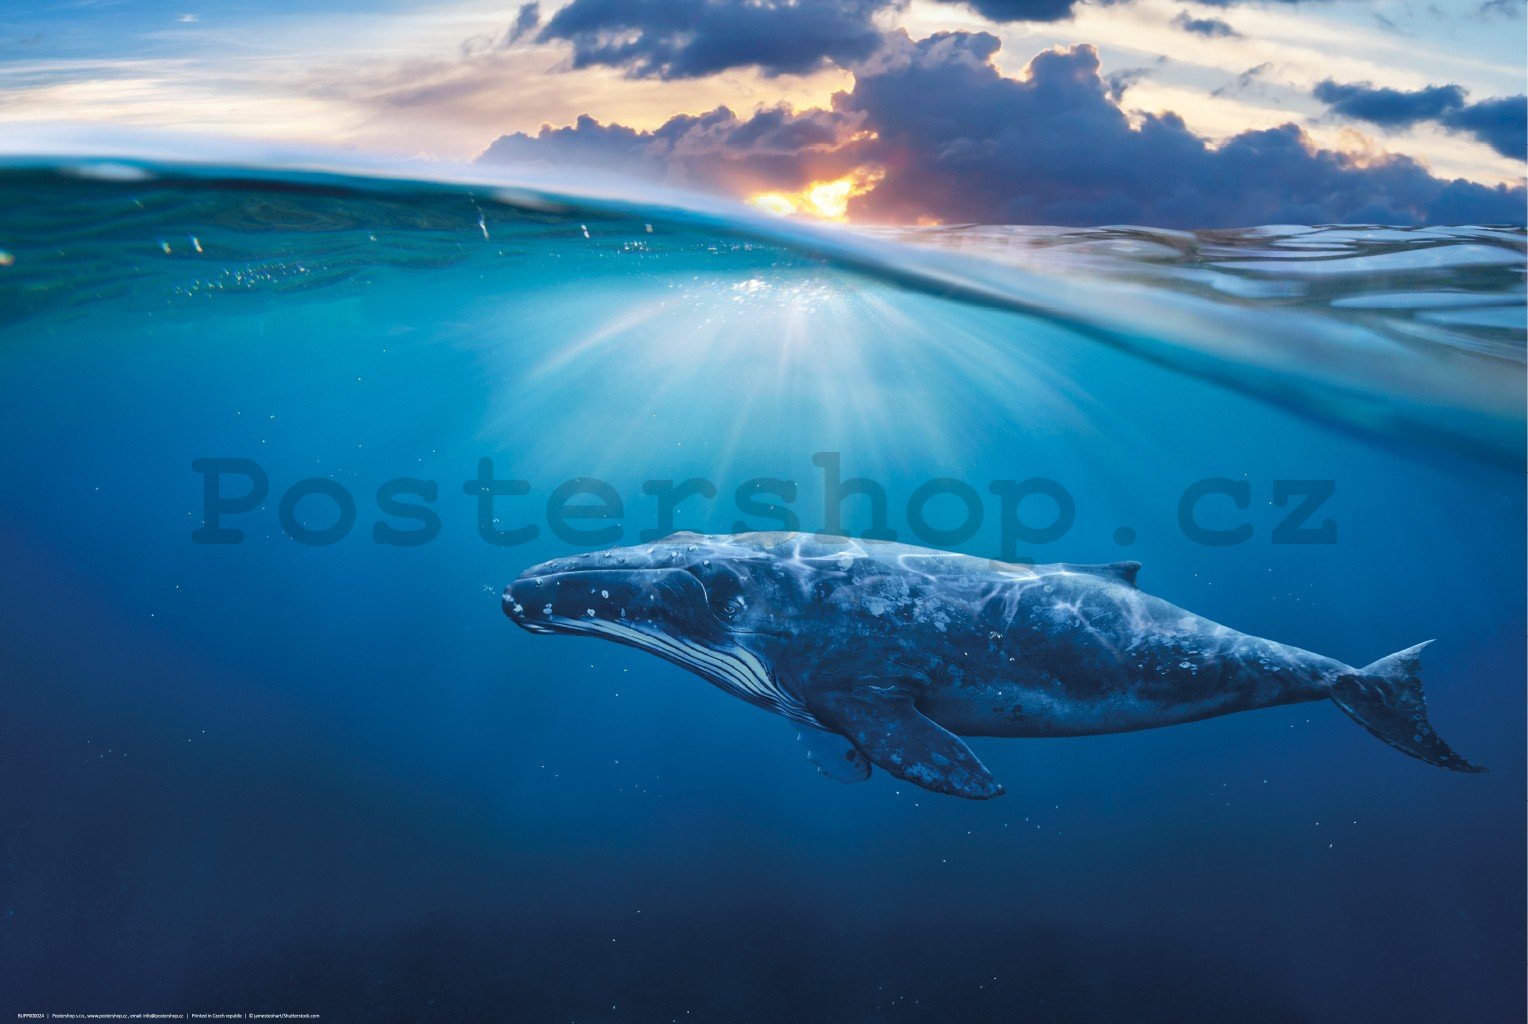 Plakát: Plejtvák obrovský (modrá velryba)